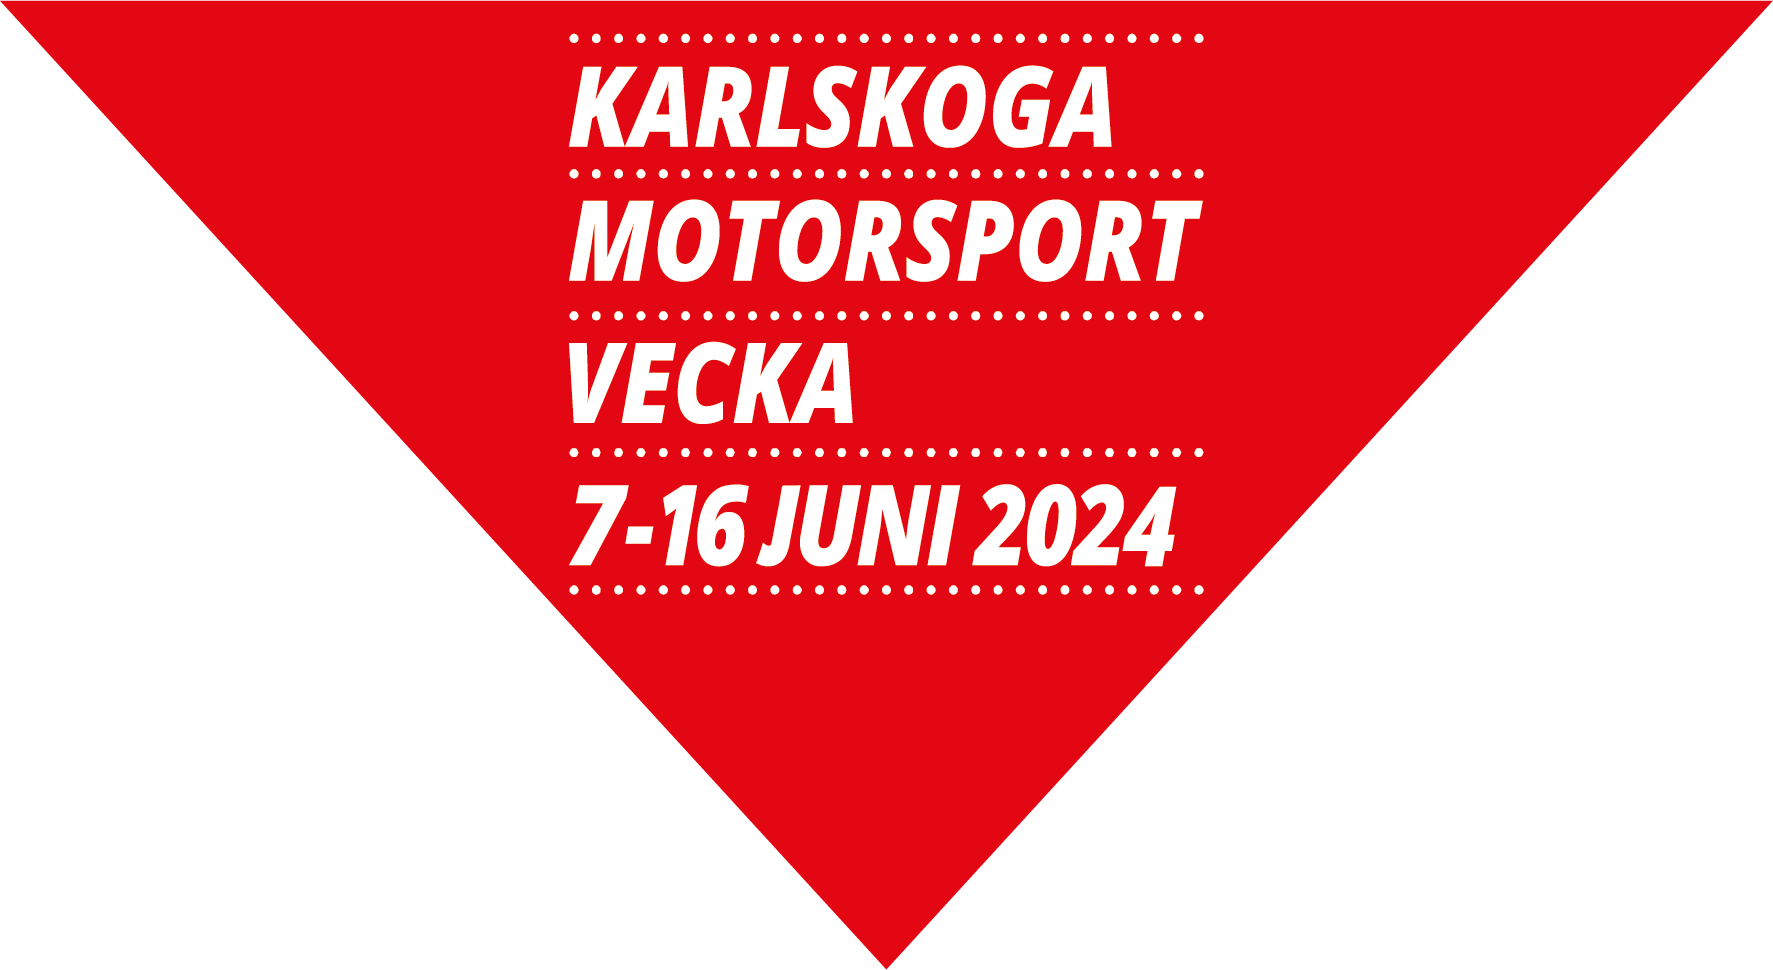 Röd triangel med texten Karlskoga Motorsportvecka 7-16 juni 2024